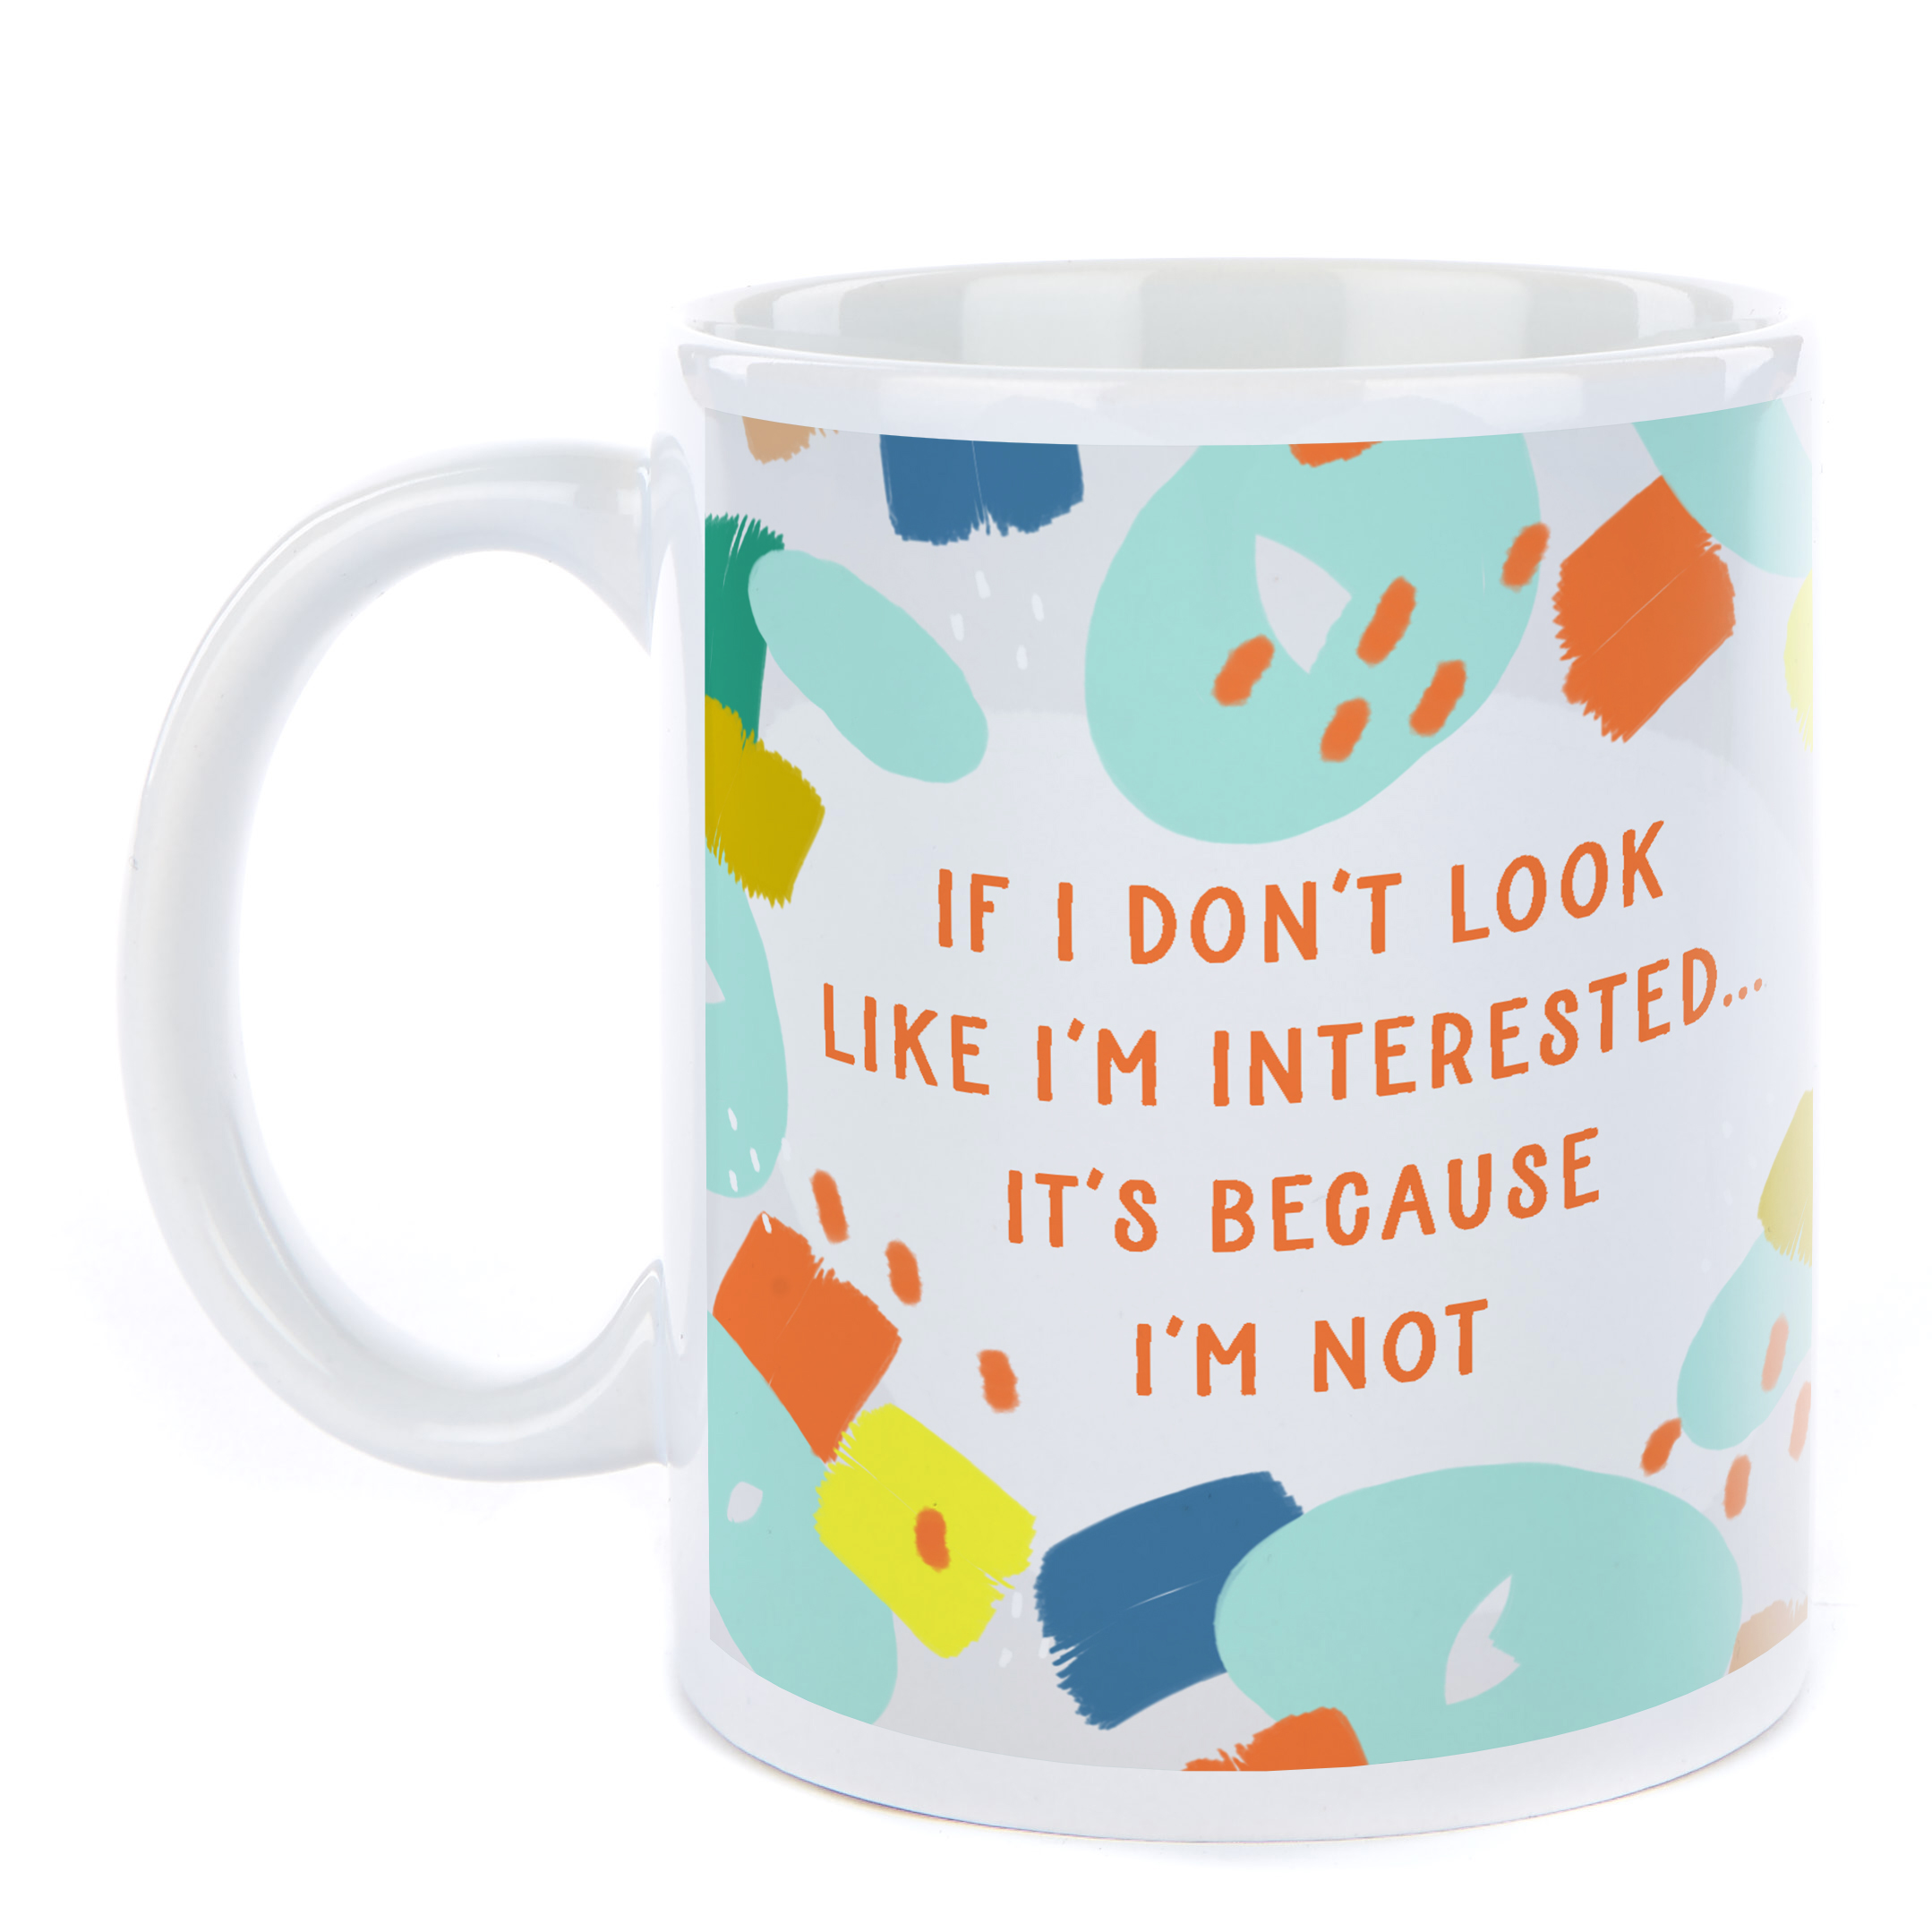 Personalised Mug - I Don't Look Like I'm Interested...